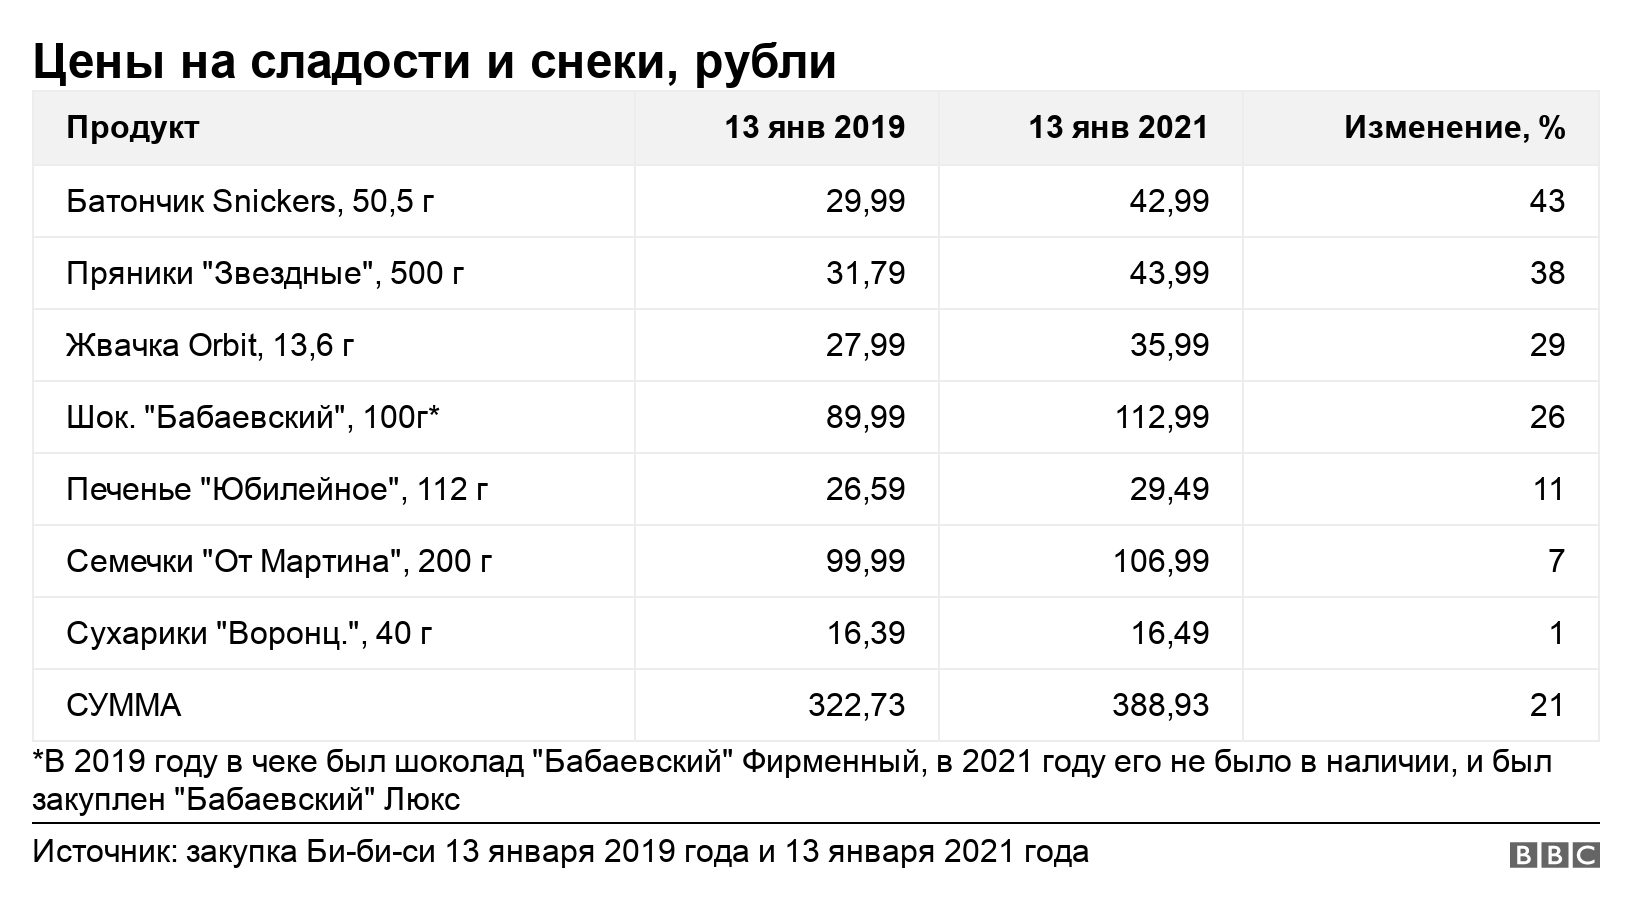 Цены на сладости и снеки, рубли. . *В 2019 году в чеке был шоколад "Бабаевский" Фирменный, в 2021 году его не было в наличии, и был закуплен "Бабаевский" Люкс.